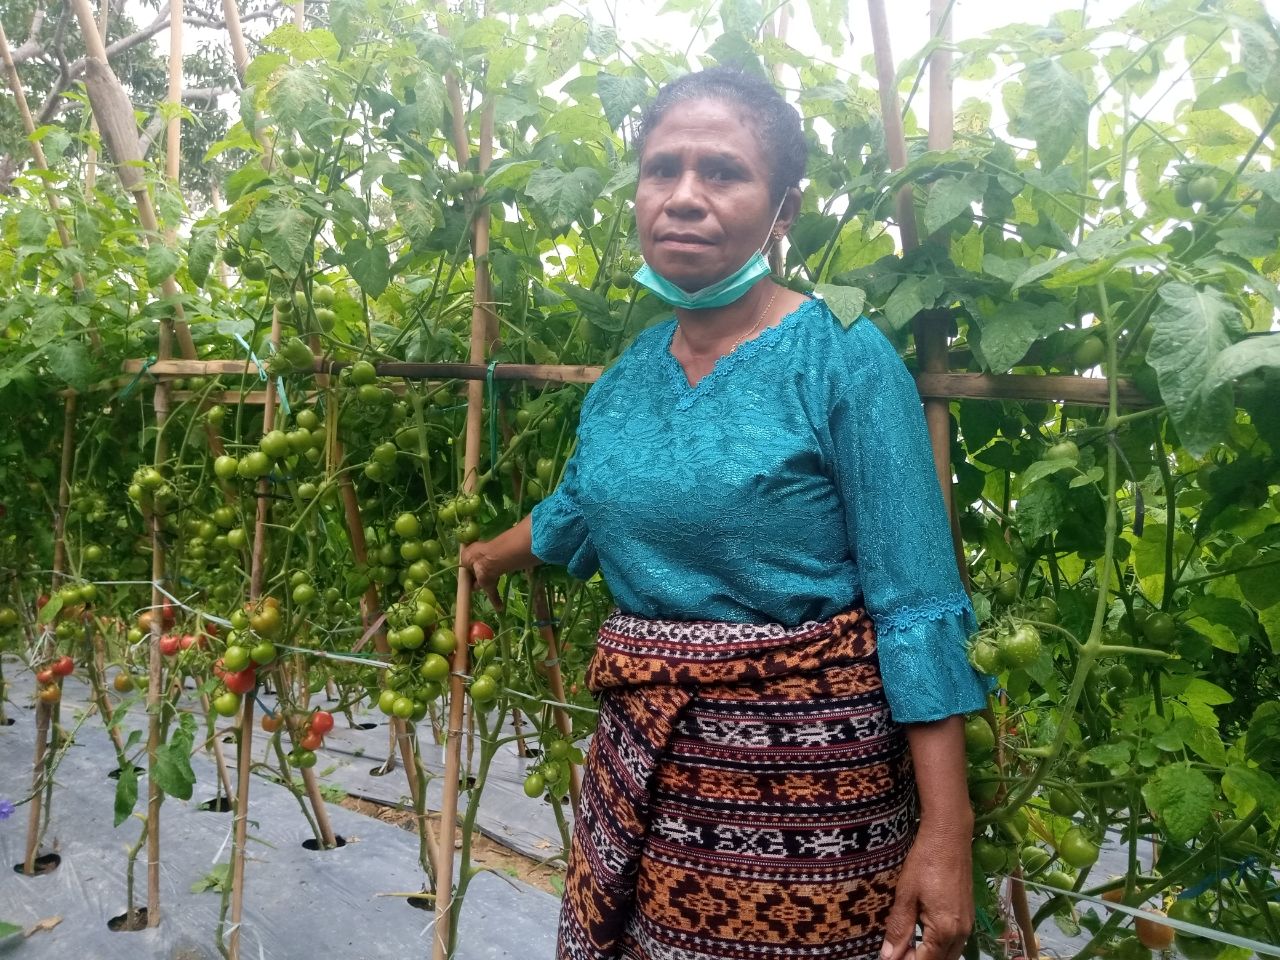 Ketua KWT Melati, Desa Riit, Kecamatan Nita, Kabupaten Sikka, Salviana Erosvita ketika berada di lahan tomat milik kelompoknya